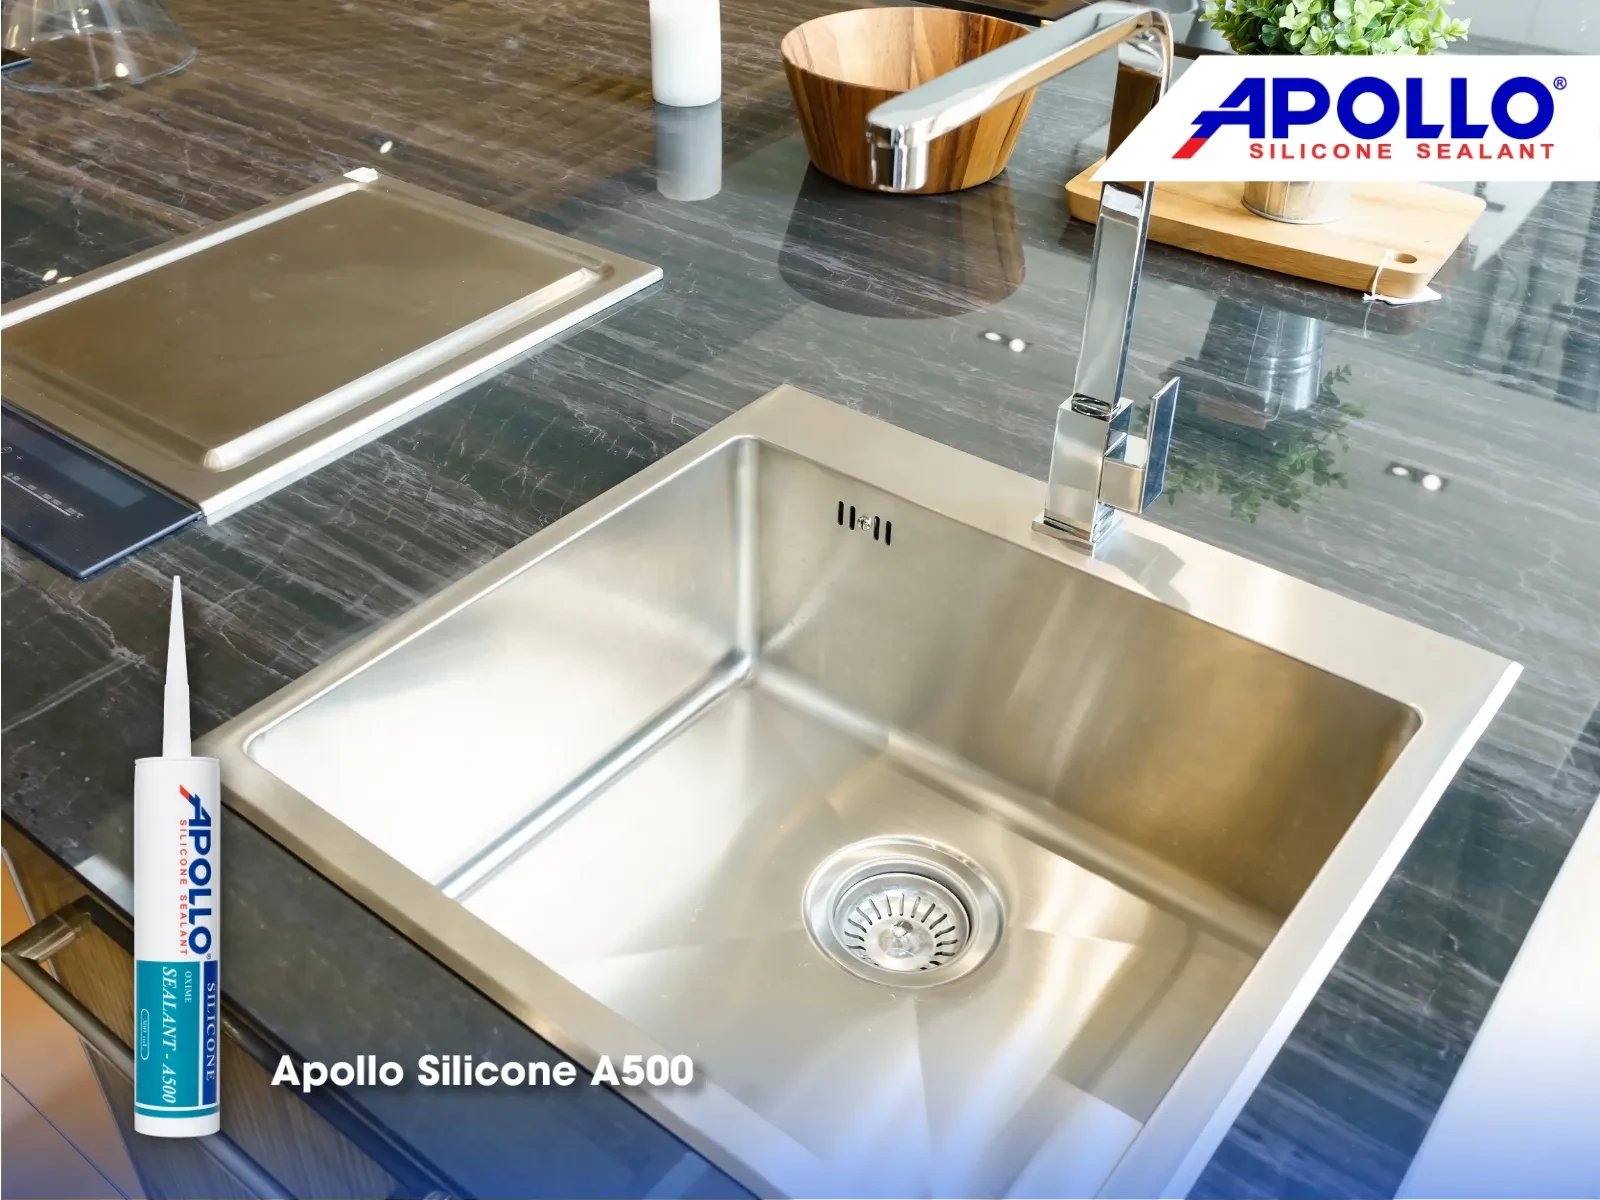 Sản phẩm Apollo Silicone A500 đem đến nhiều ưu điểm cho việc thi công dán bồn rửa chén